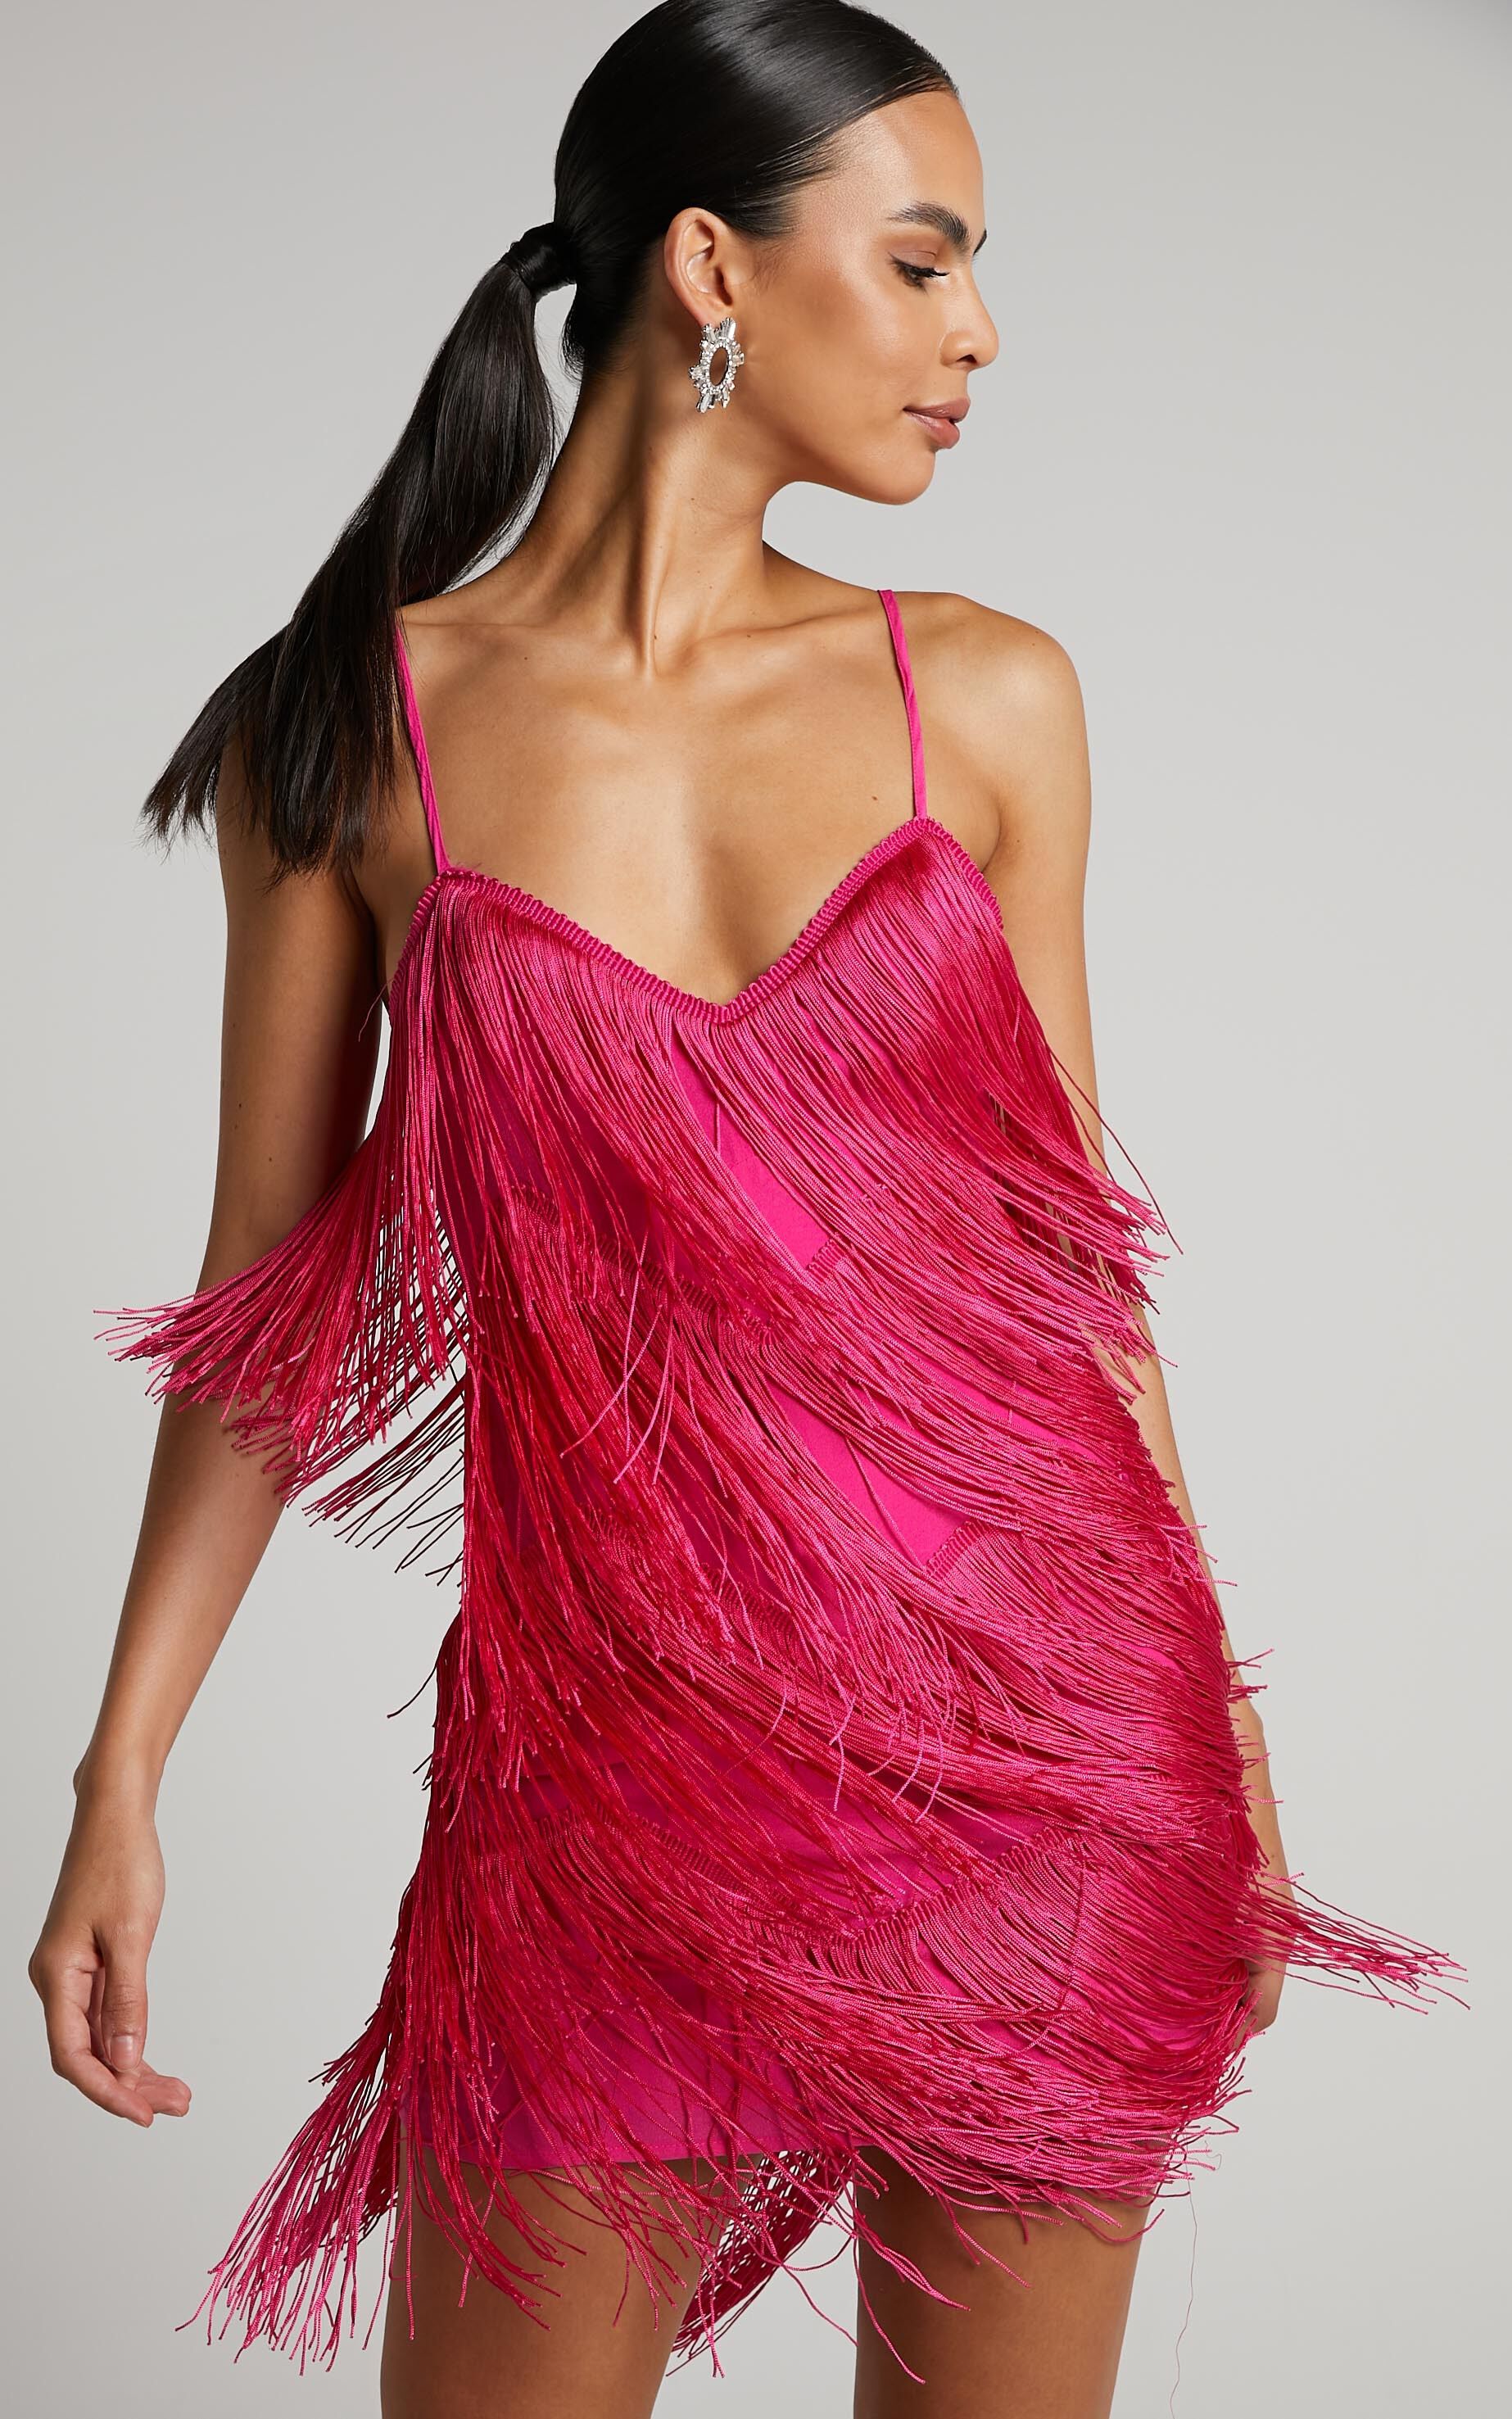 Siofra Mini Dress - Zig Zag Fringe Dress in Hot Pink - 04, PNK1, super-hi-res image number null